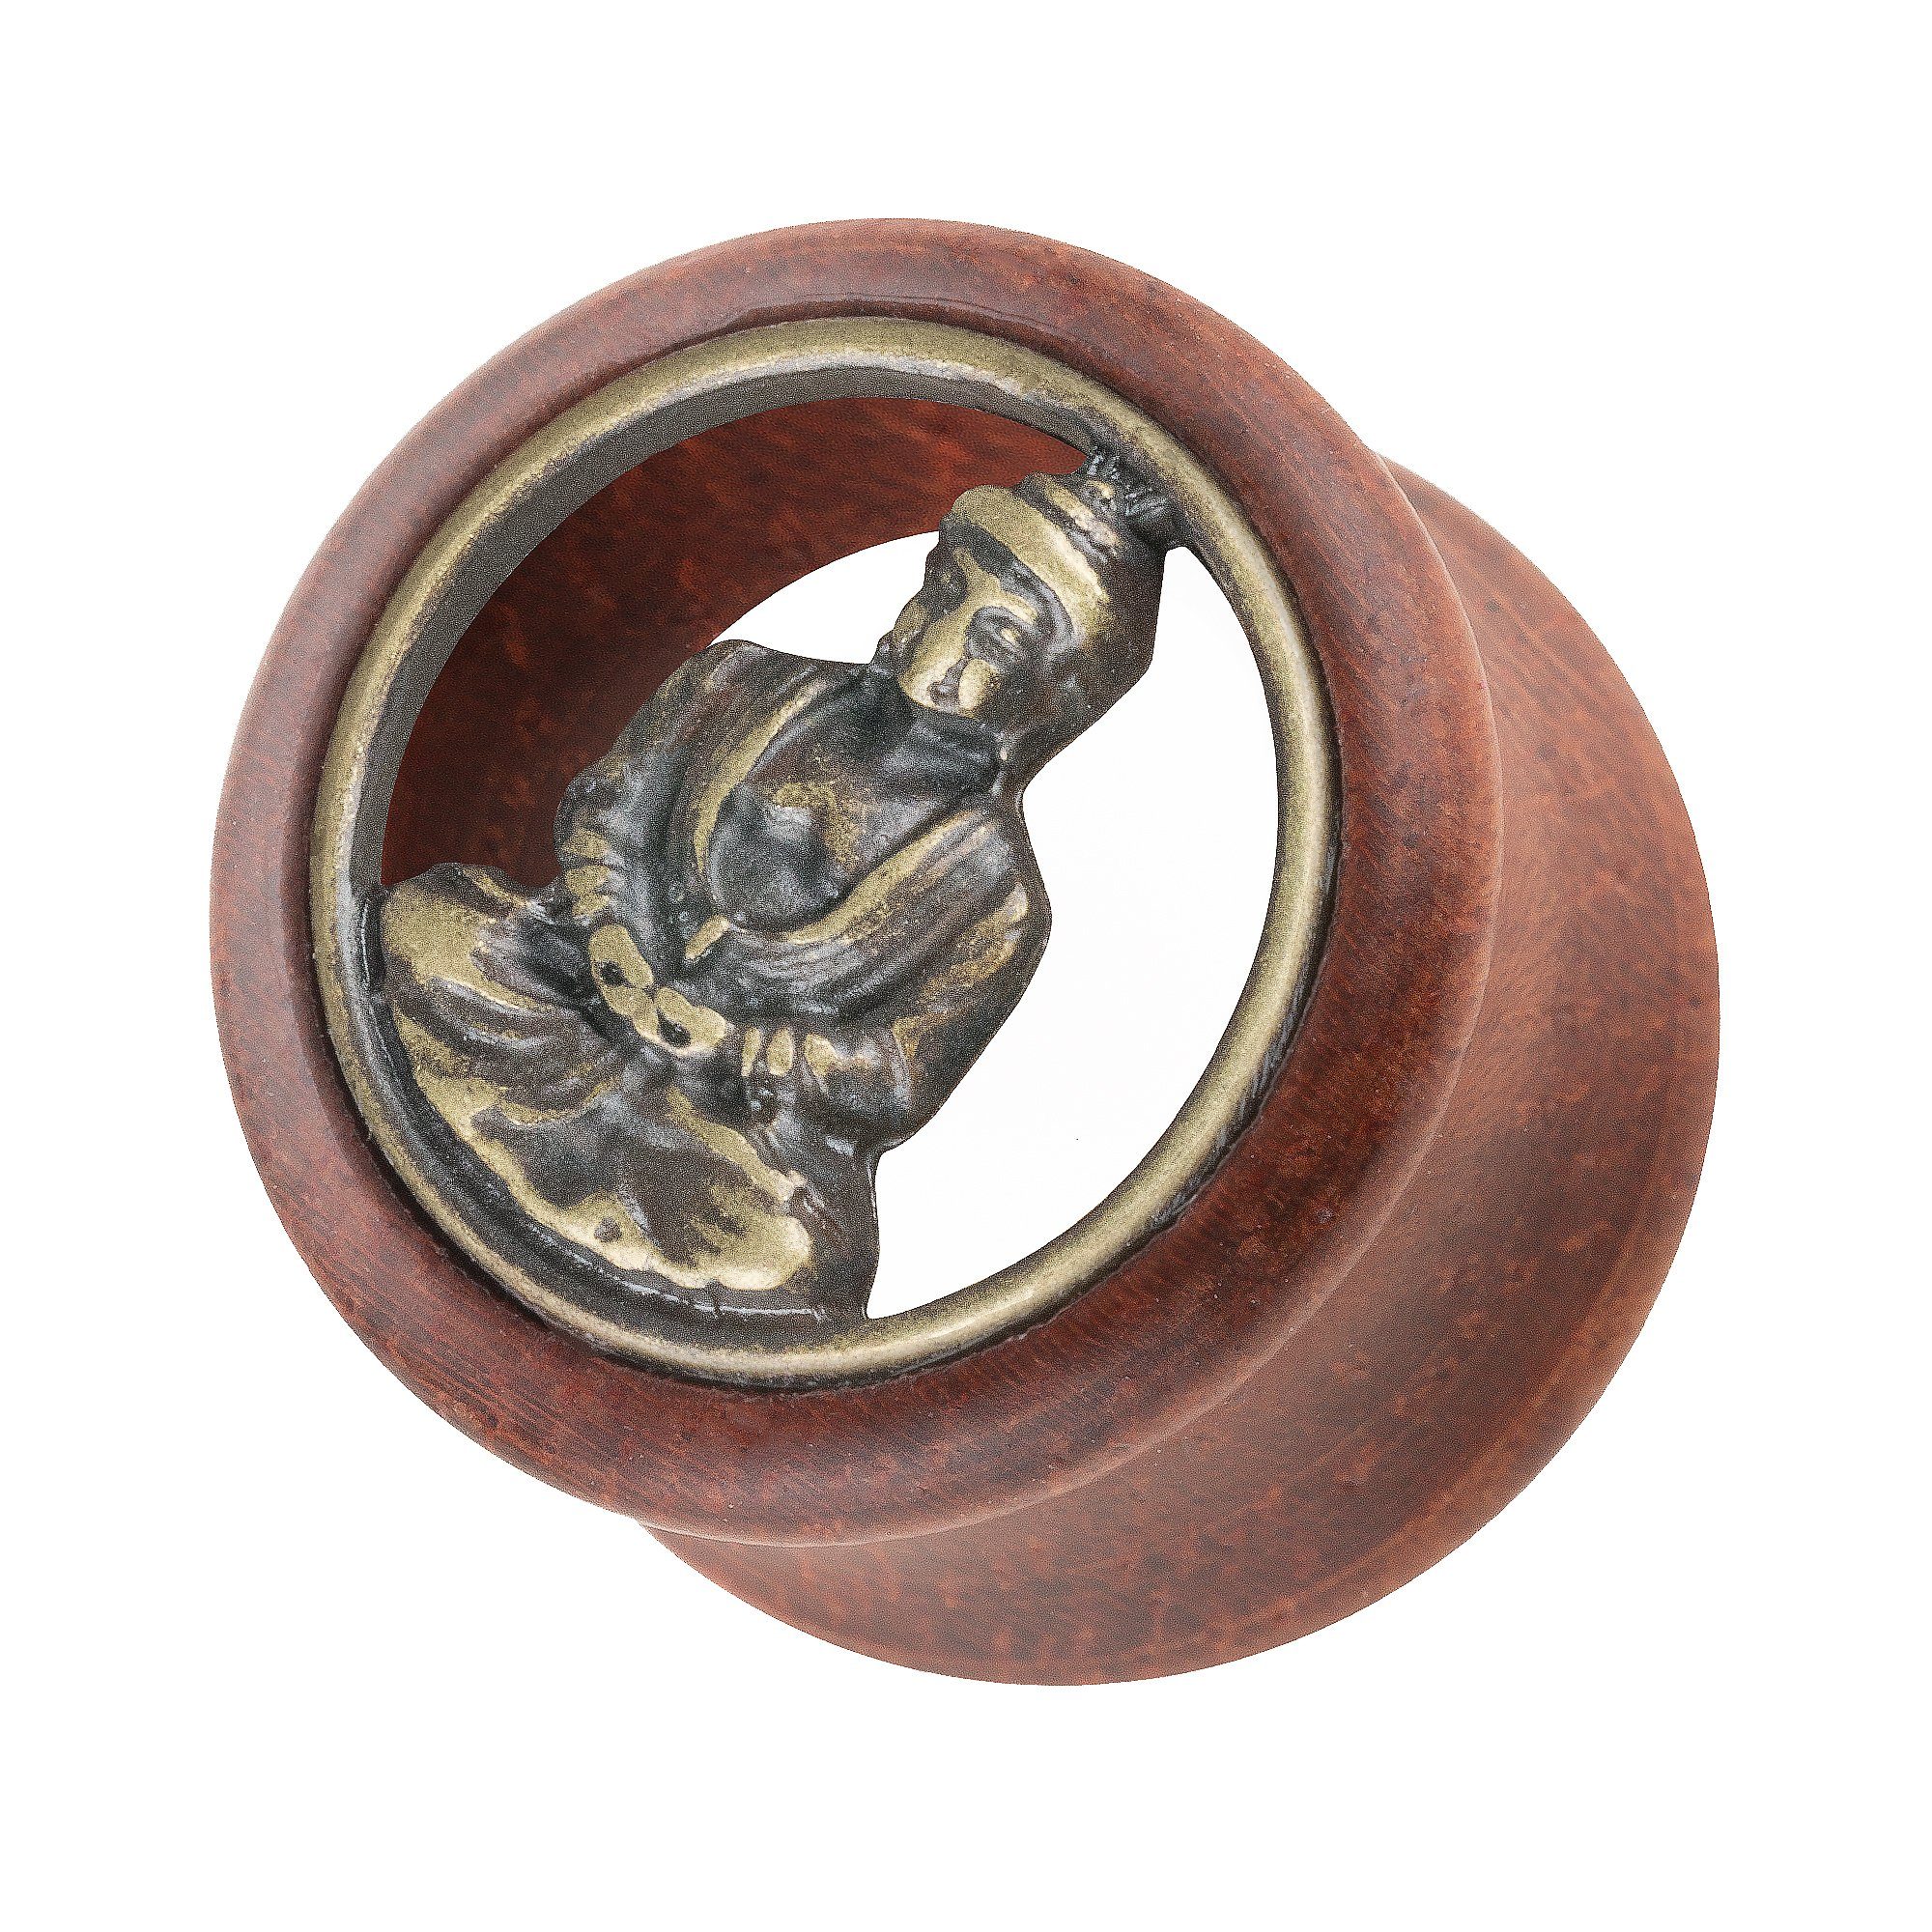 Taffstyle Plug Inlay, mit Holz Piercing Gold Zeichen Ohrpiercing Tunnel Braun Organic Plug Flared Inlay Buddha Flesh Buddha Ohr Double